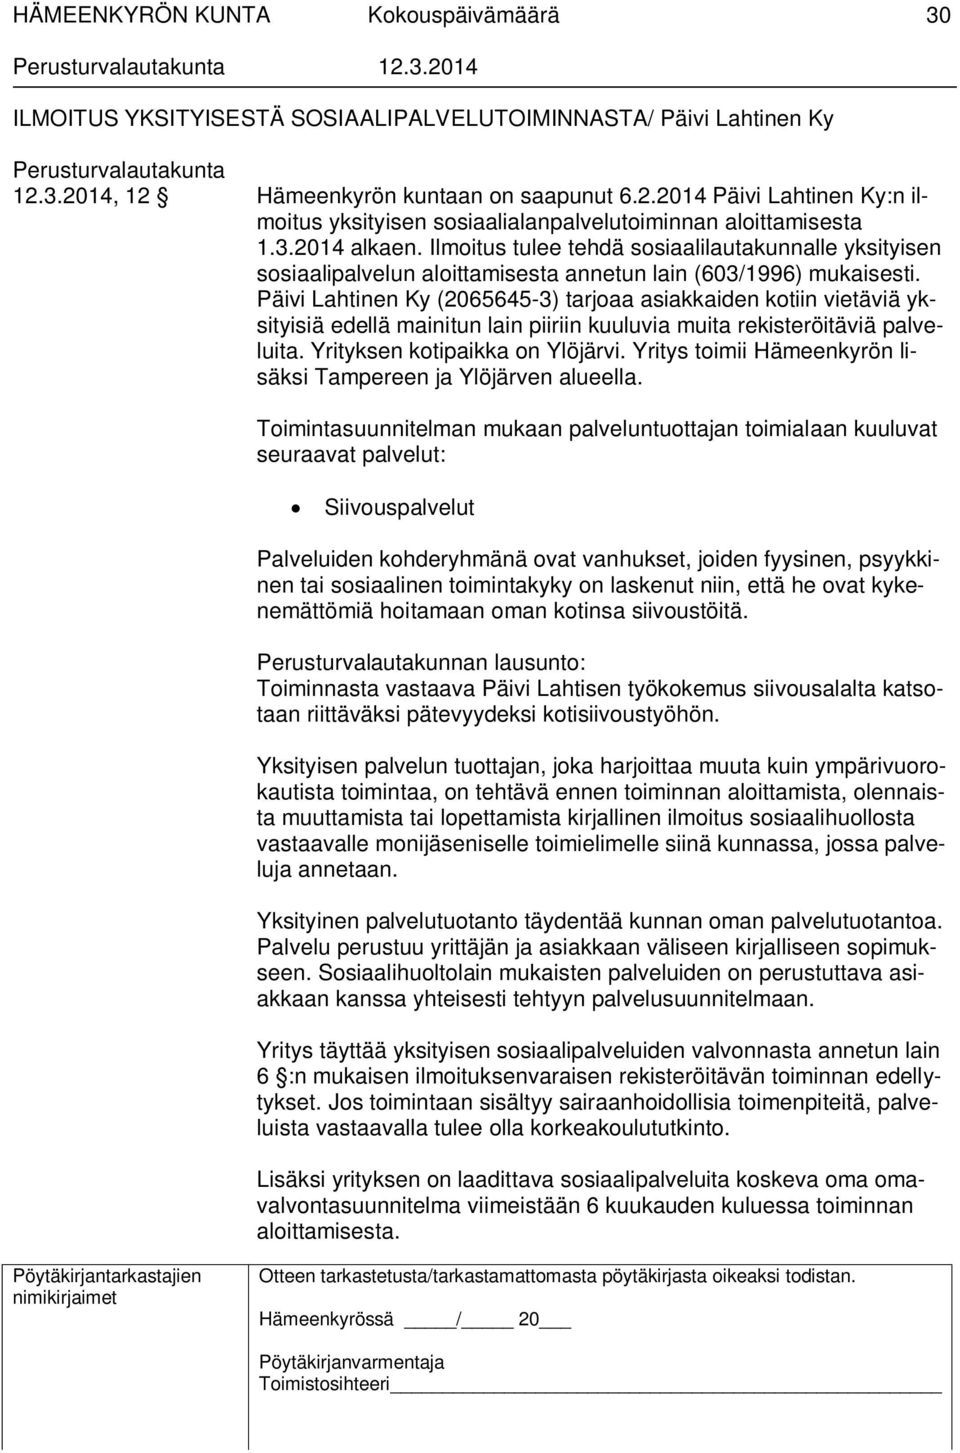 Päivi Lahtinen Ky (2065645-3) tarjoaa asiakkaiden kotiin vietäviä yksityisiä edellä mainitun lain piiriin kuuluvia muita rekisteröitäviä palveluita. Yrityksen kotipaikka on Ylöjärvi.